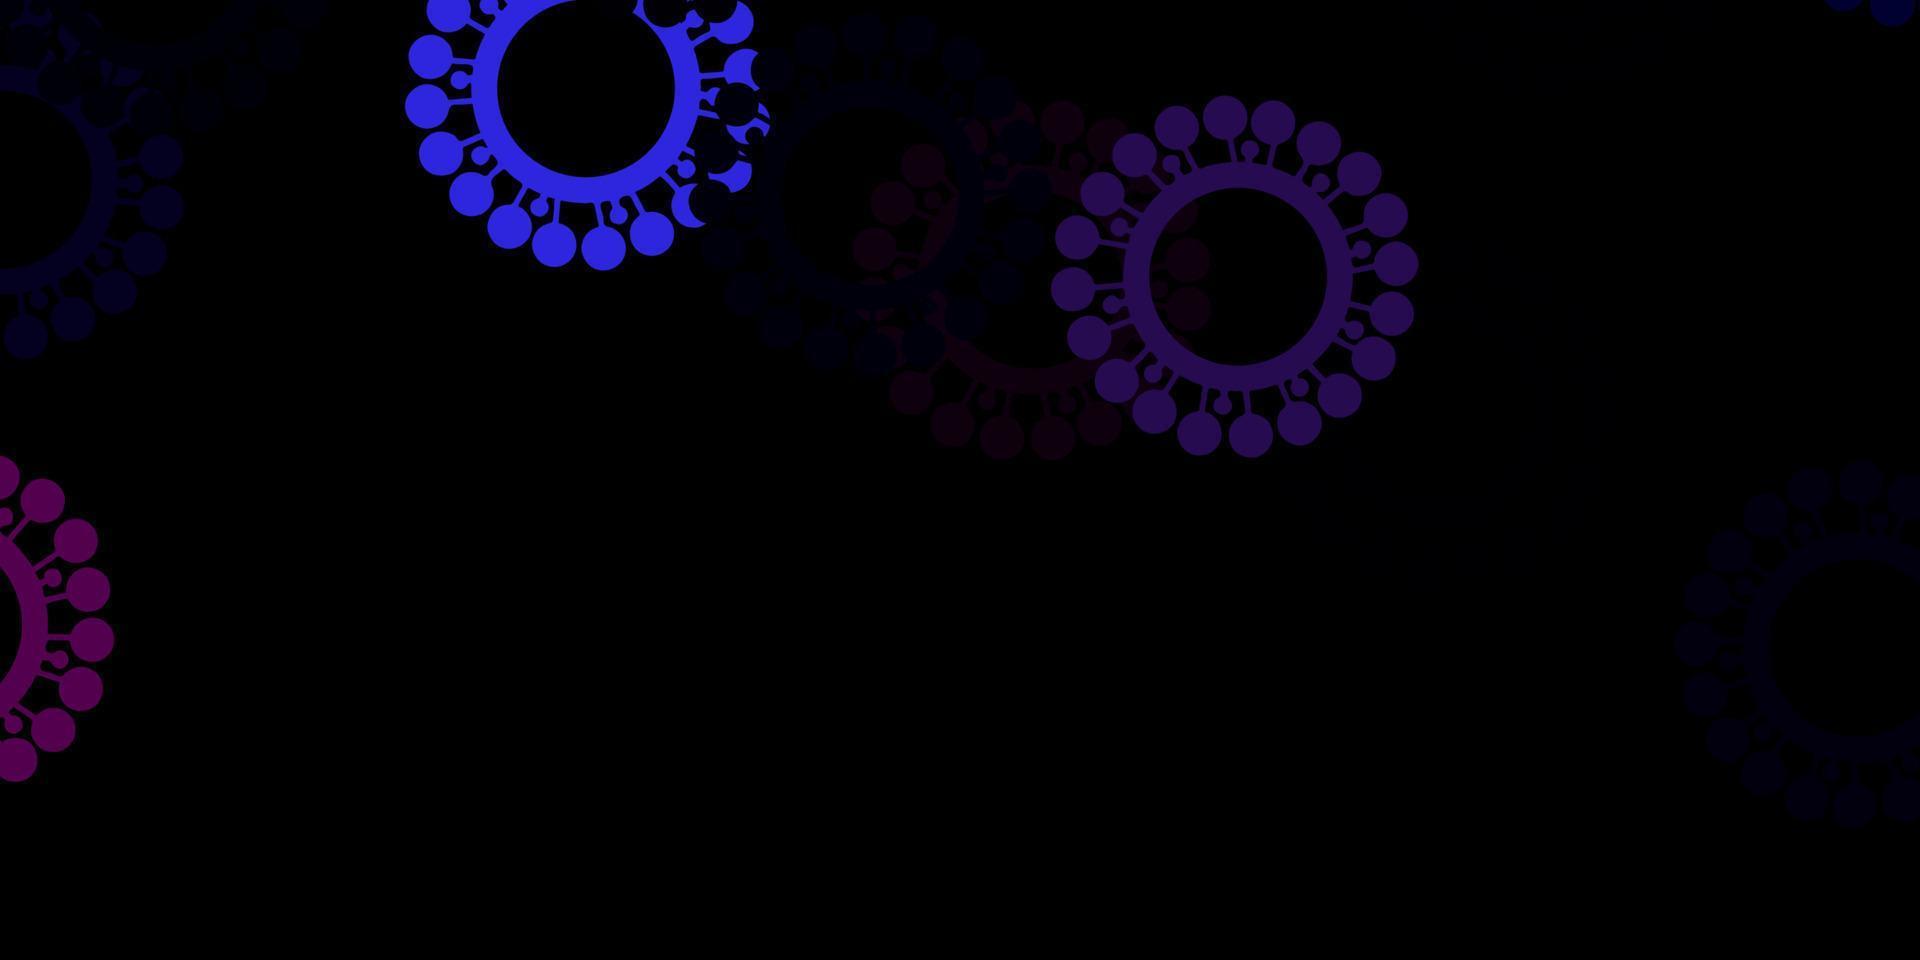 toile de fond de vecteur rose et bleu foncé avec des symboles de virus.